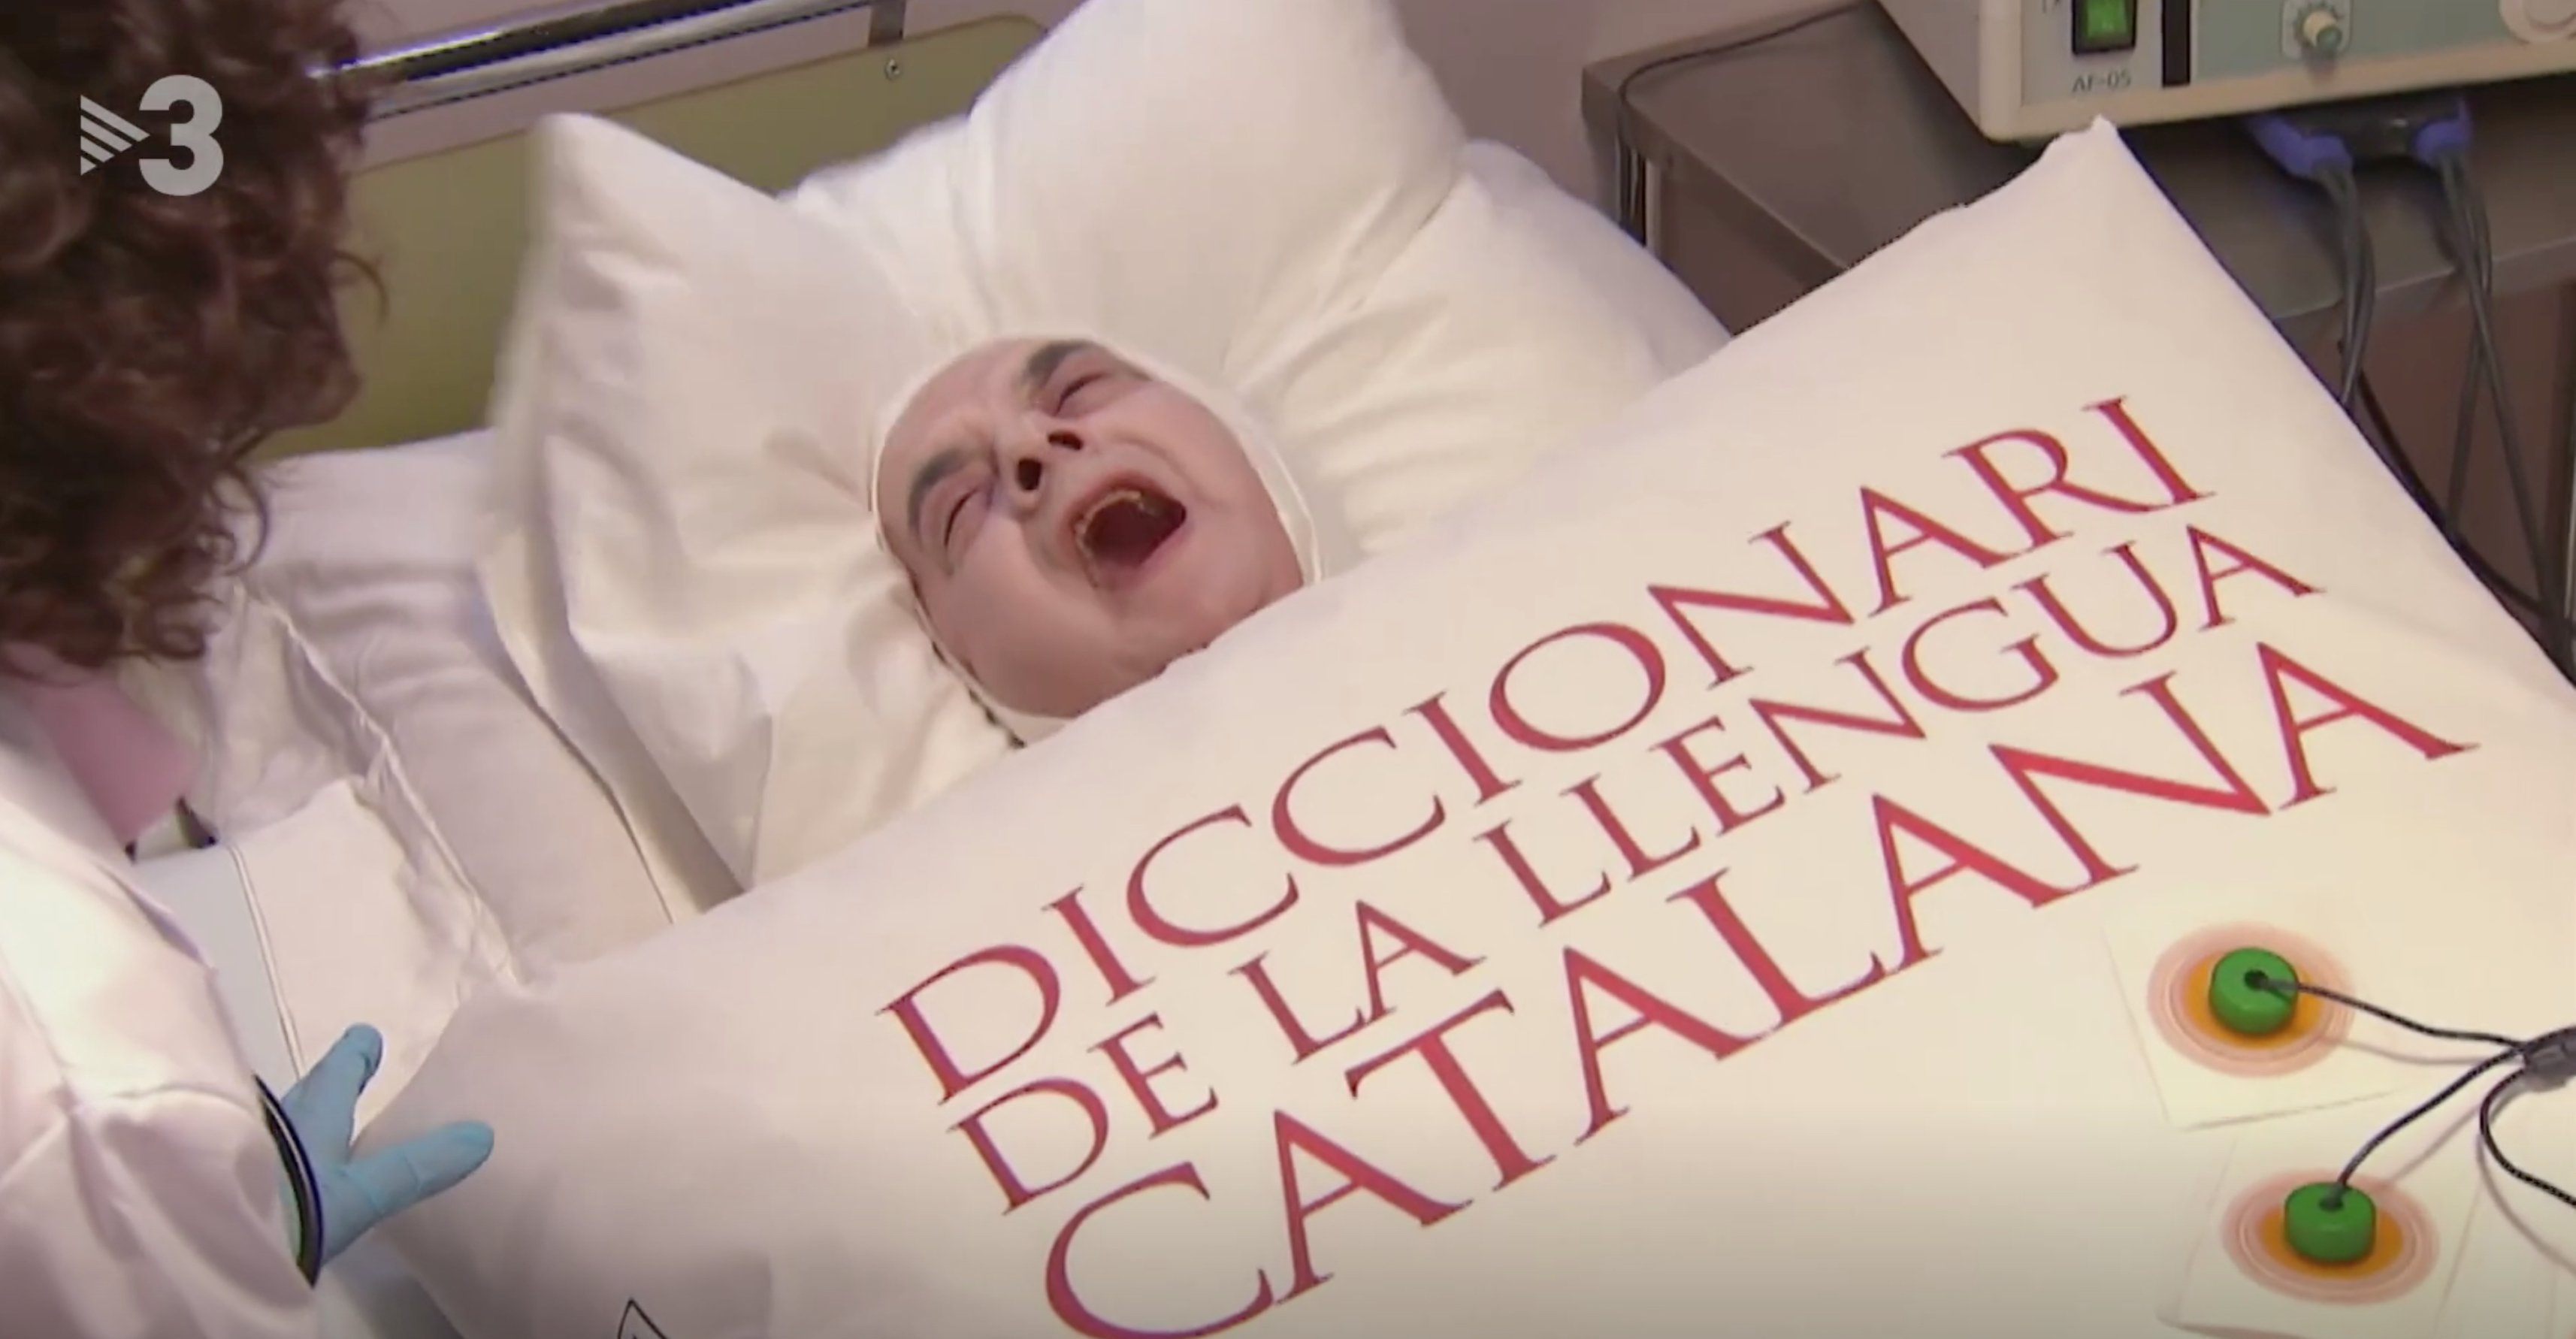 El català mor maltractat a TV3: "en castellano nos entendemos todos"